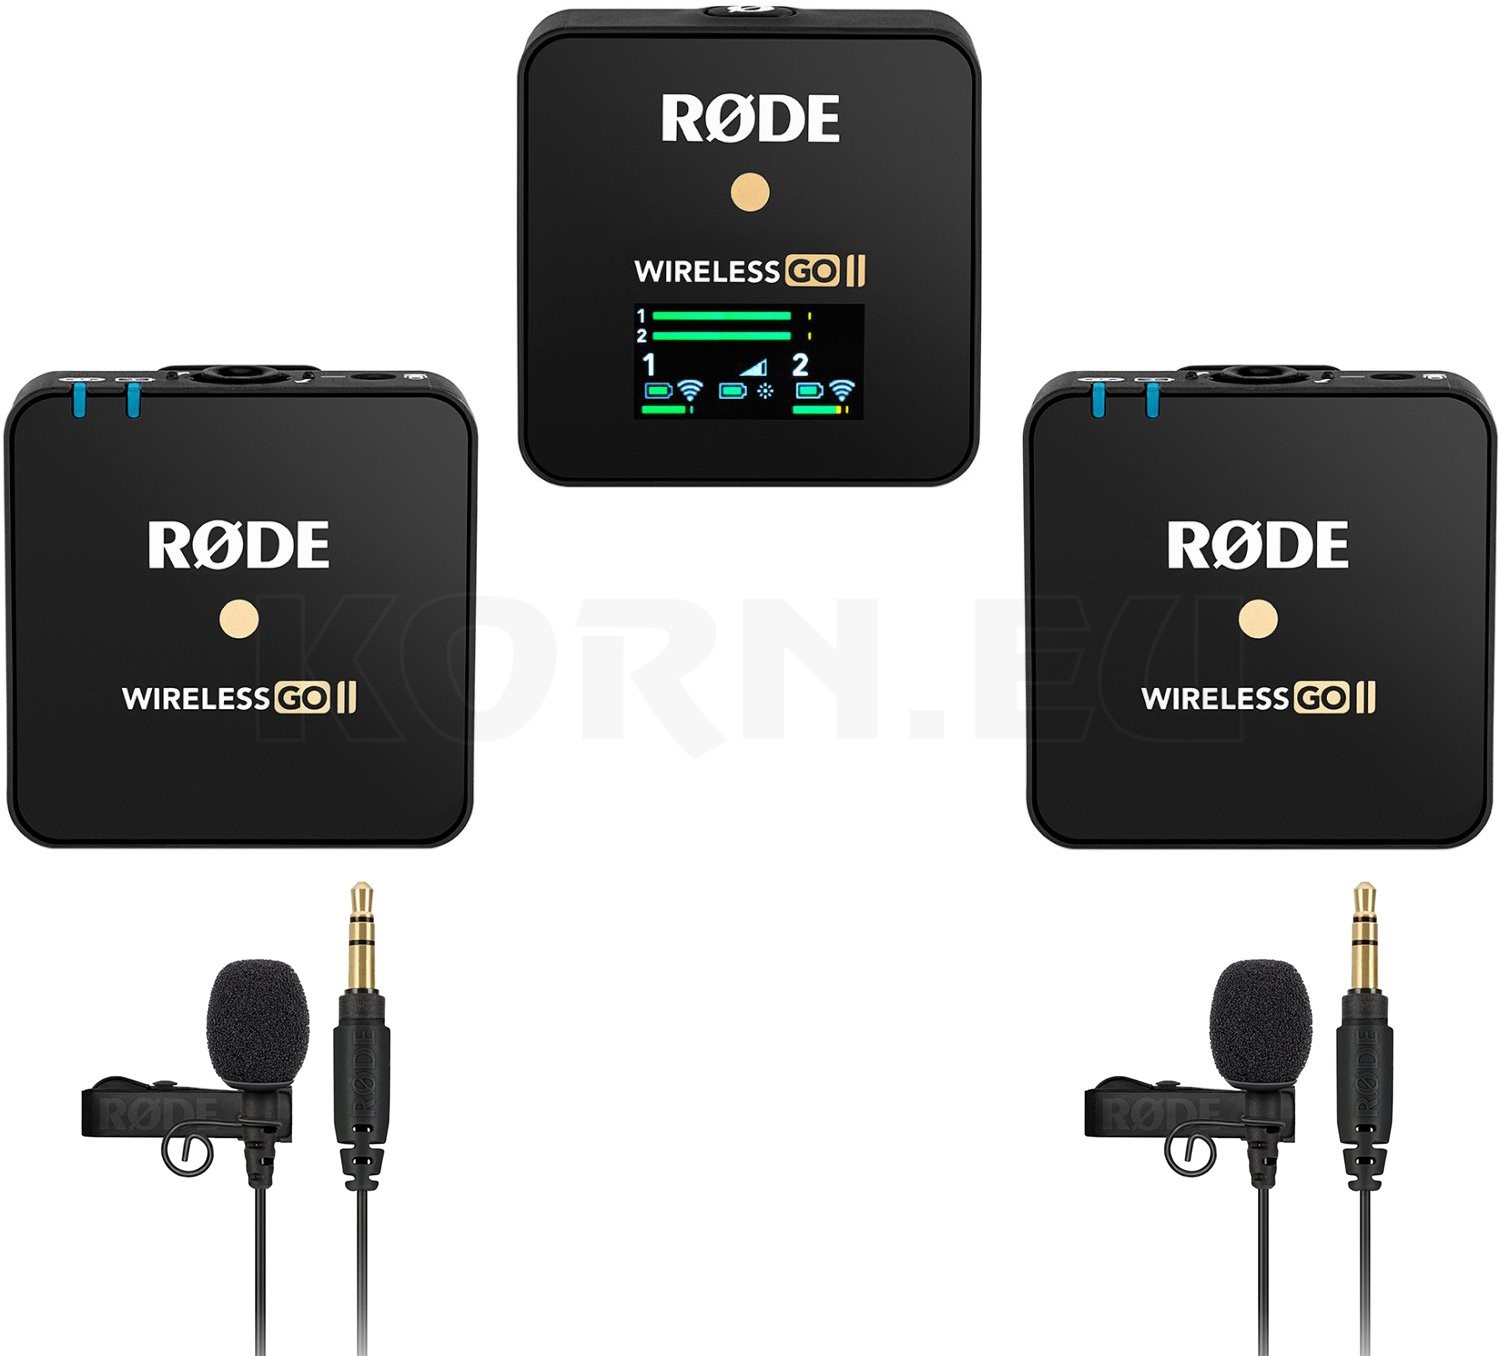 ロードワイヤレスゴー2 / RODE wireless go2 iveyartistry.com